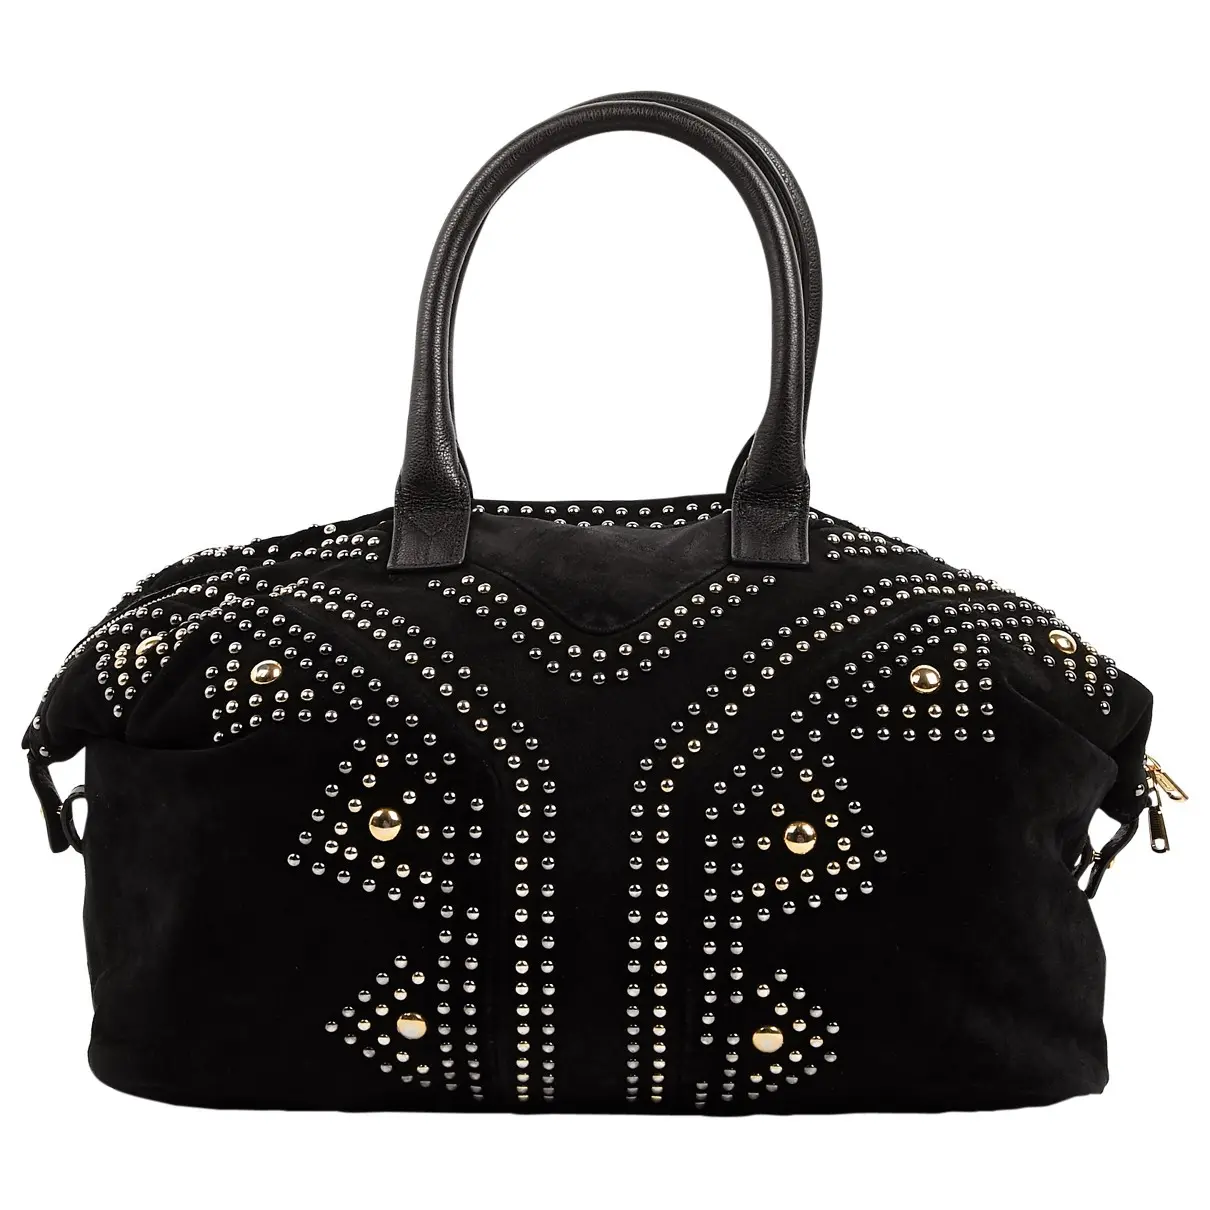 Easy handbag Yves Saint Laurent